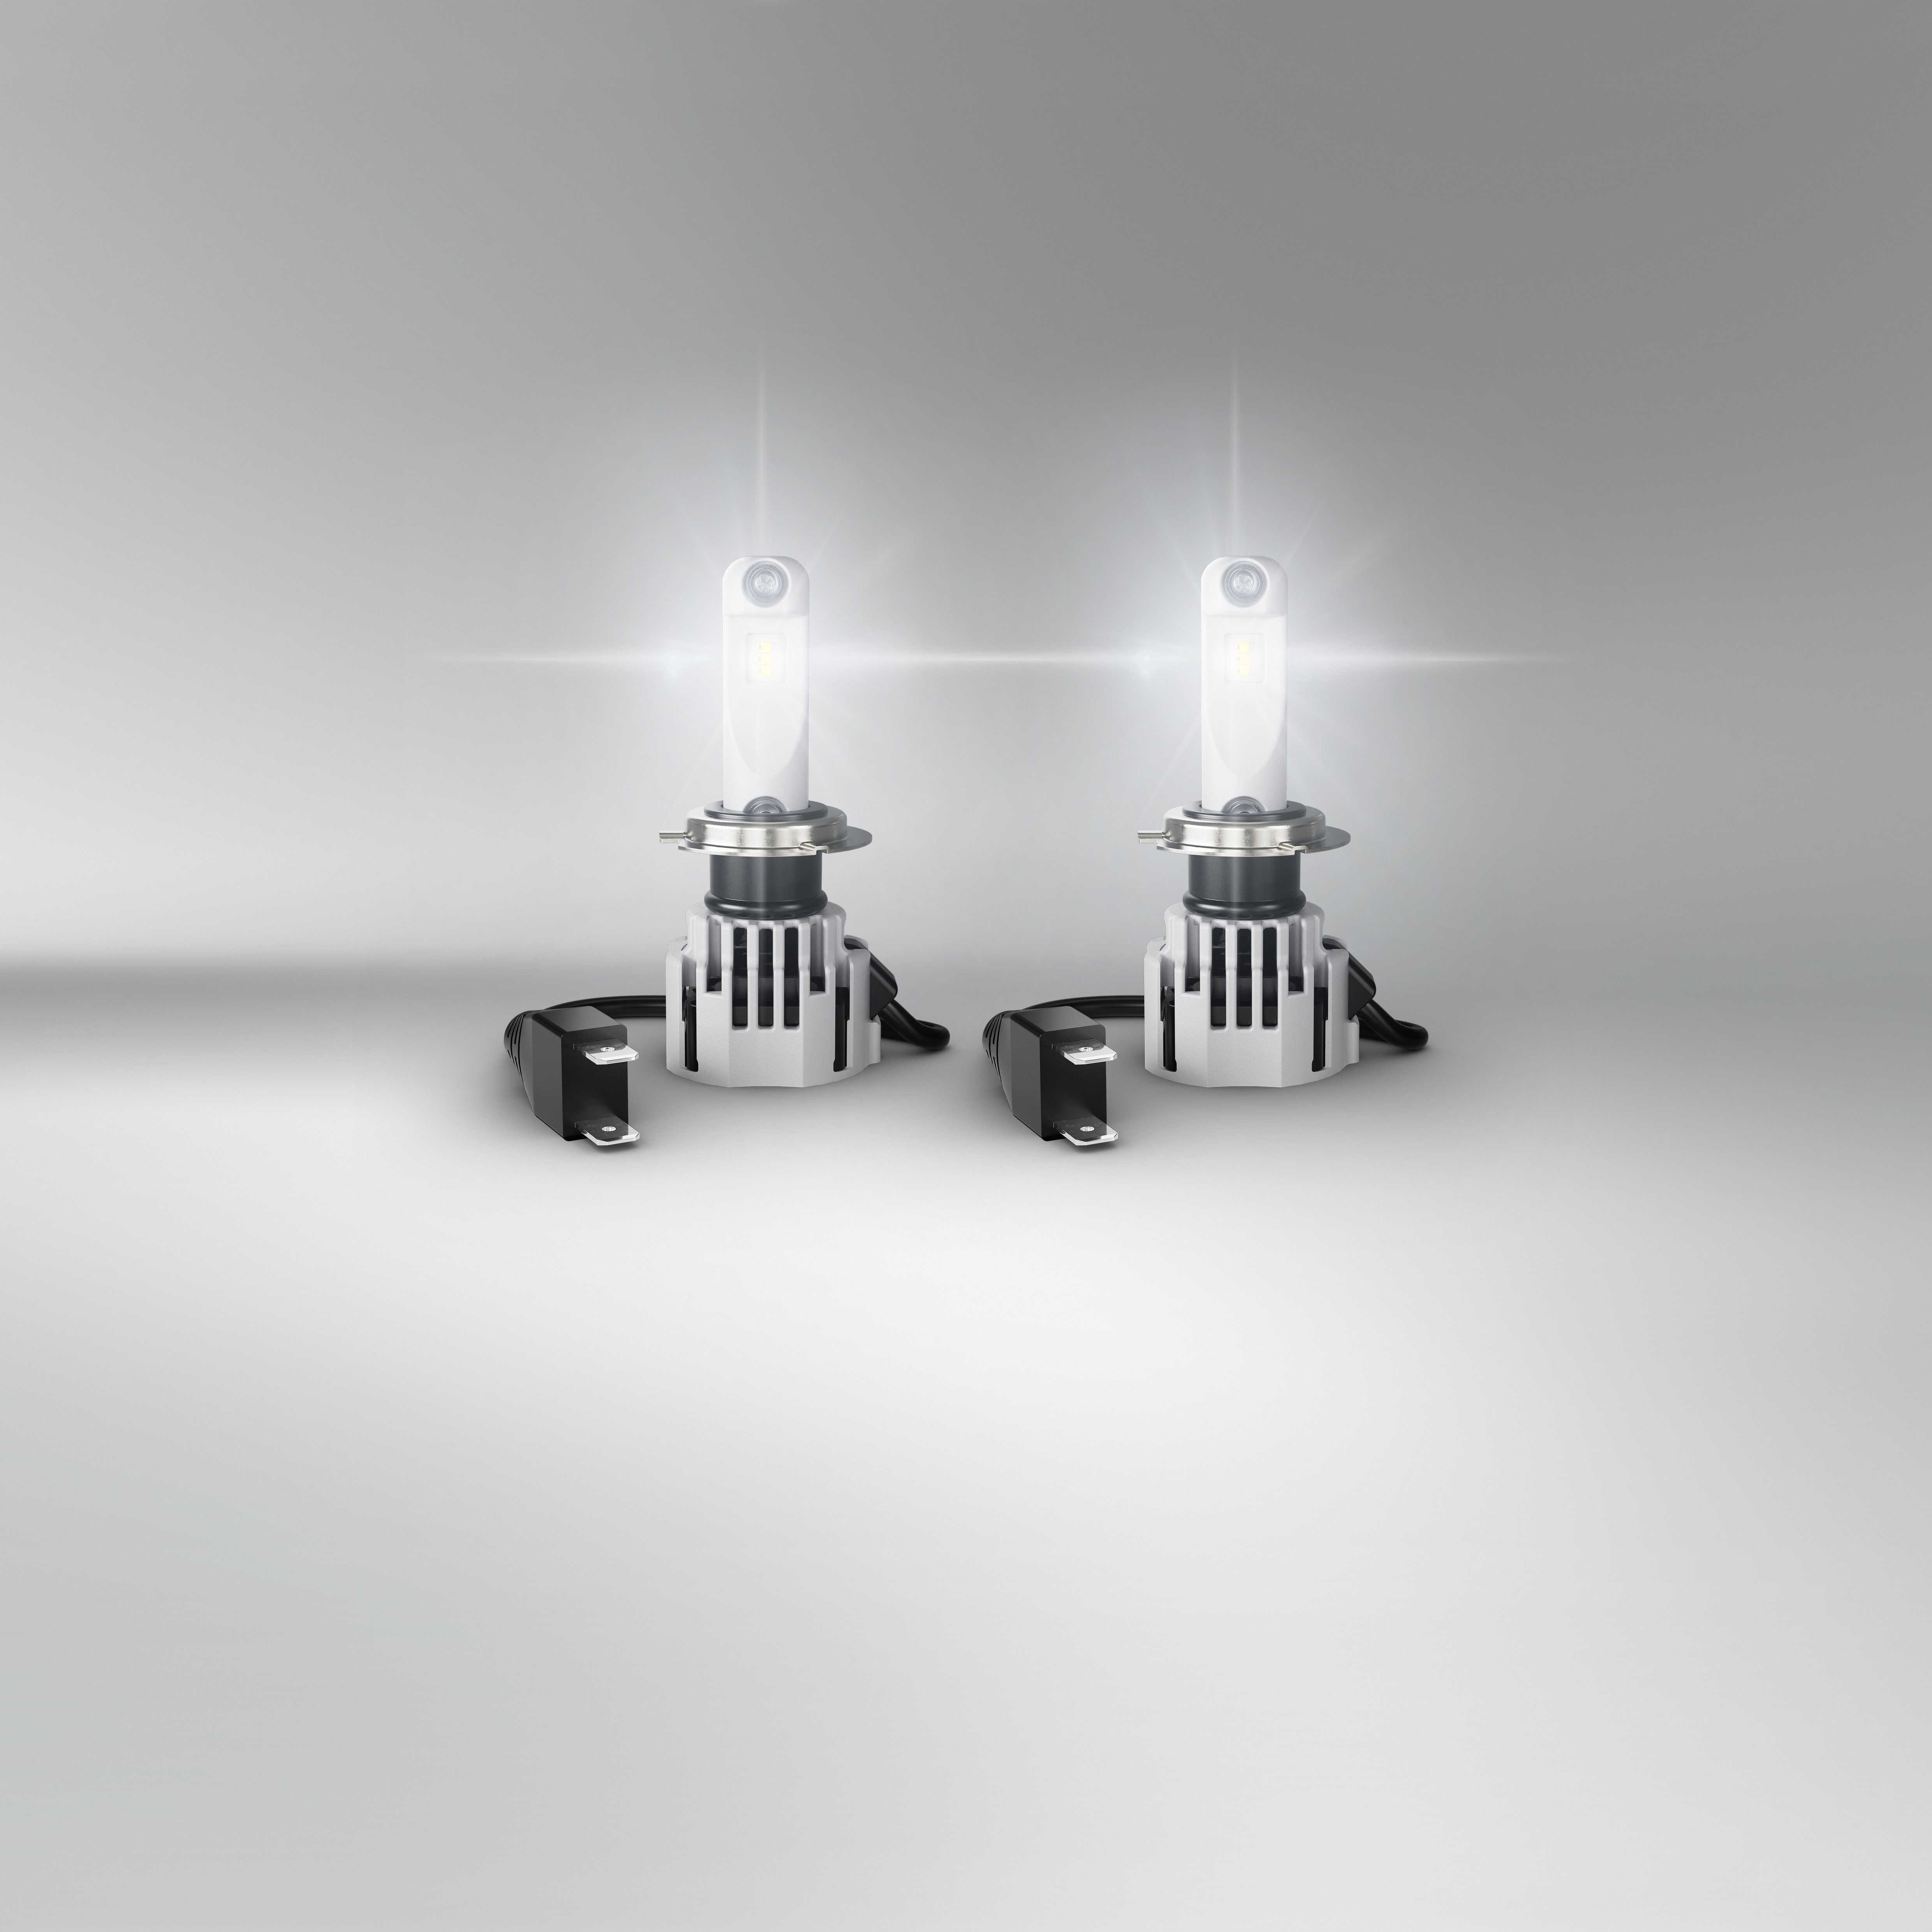 LED Лед Крушки за къси и дълги светлини LEDriving HL INTENSE H7/H18